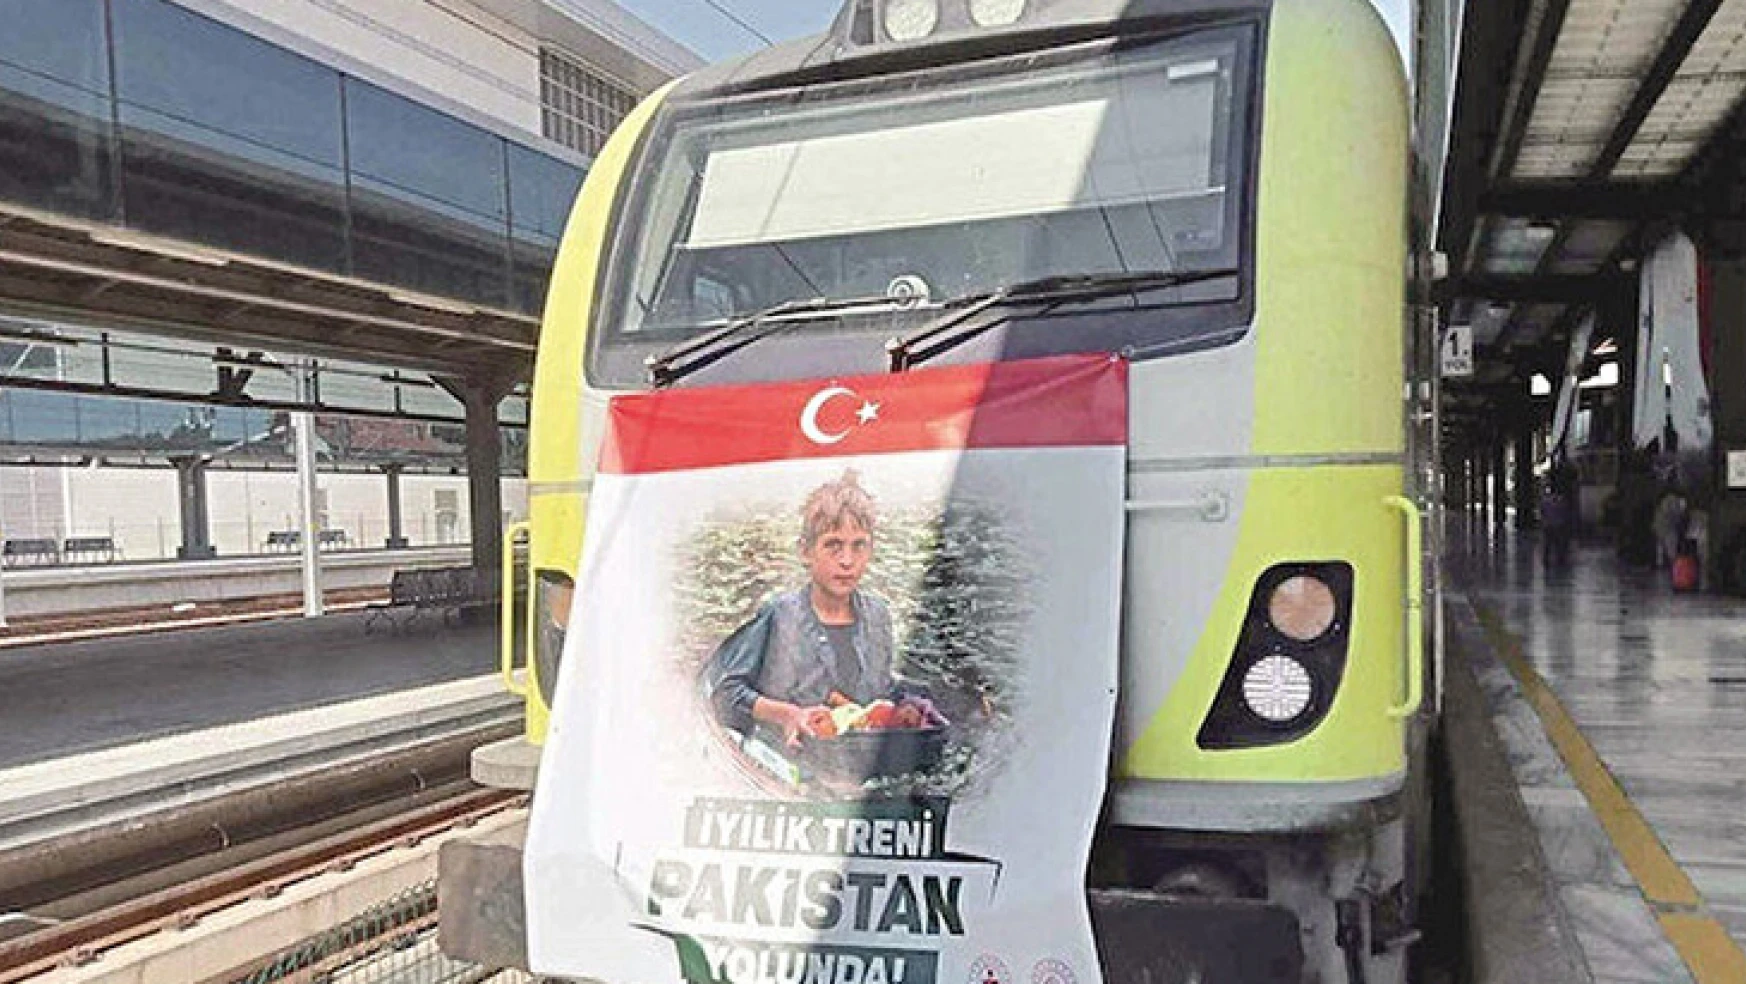 Yardıma koşan ilk ülke Türkiye oldu, iyilik treni yola çıktı